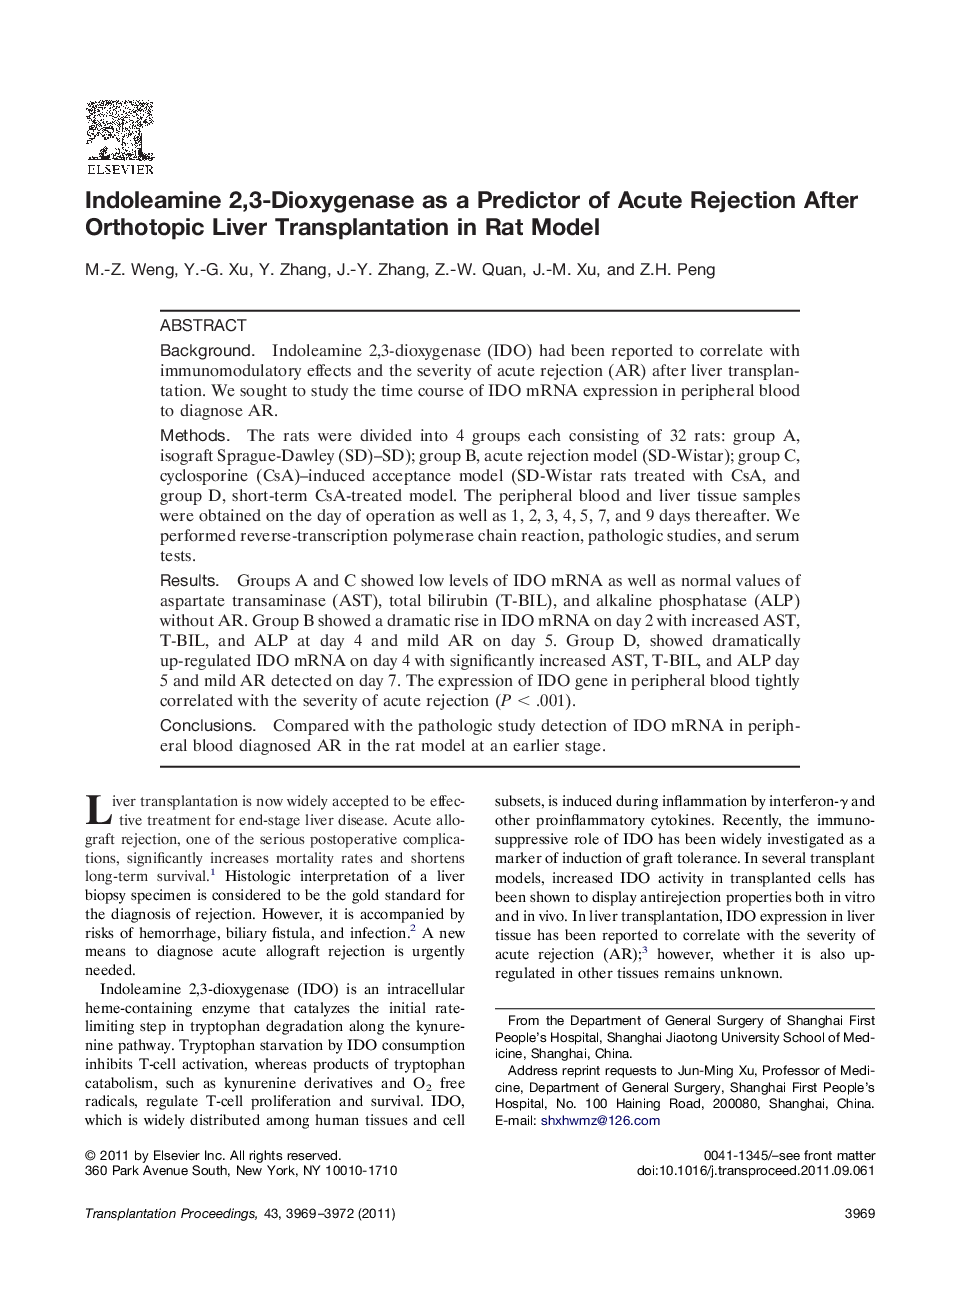 Experimental transplantationTransplantation modelIndoleamine 2,3-Dioxygenase as a Predictor of Acute Rejection After Orthotopic Liver Transplantation in Rat Model